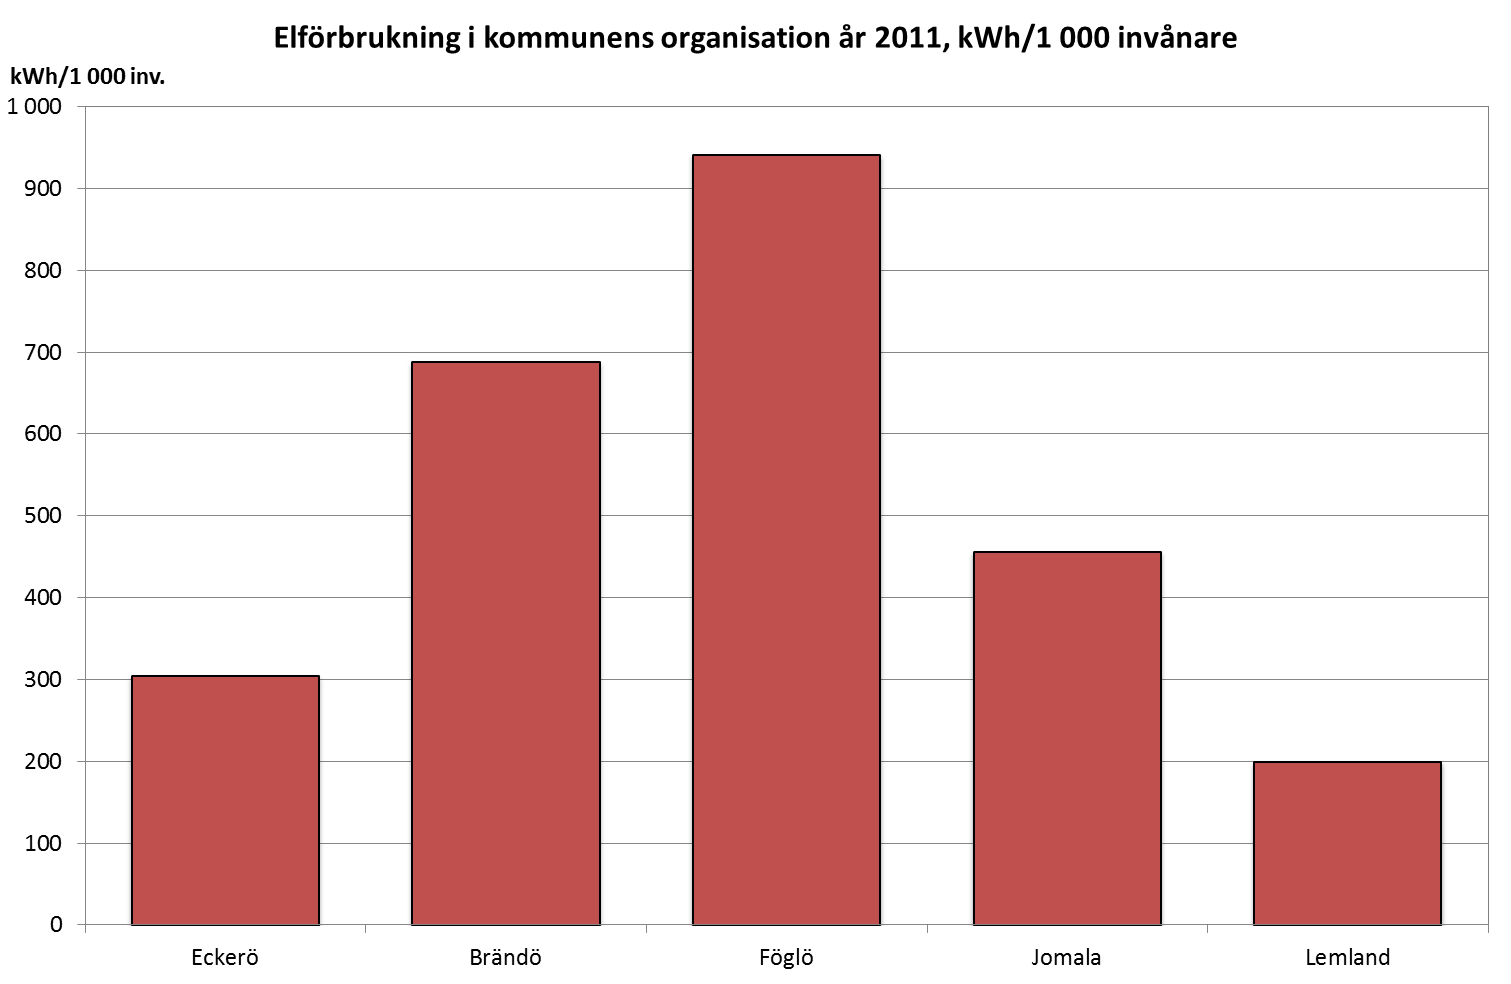 Elförbrukning per 1000 invånare högst i Föglö 2011